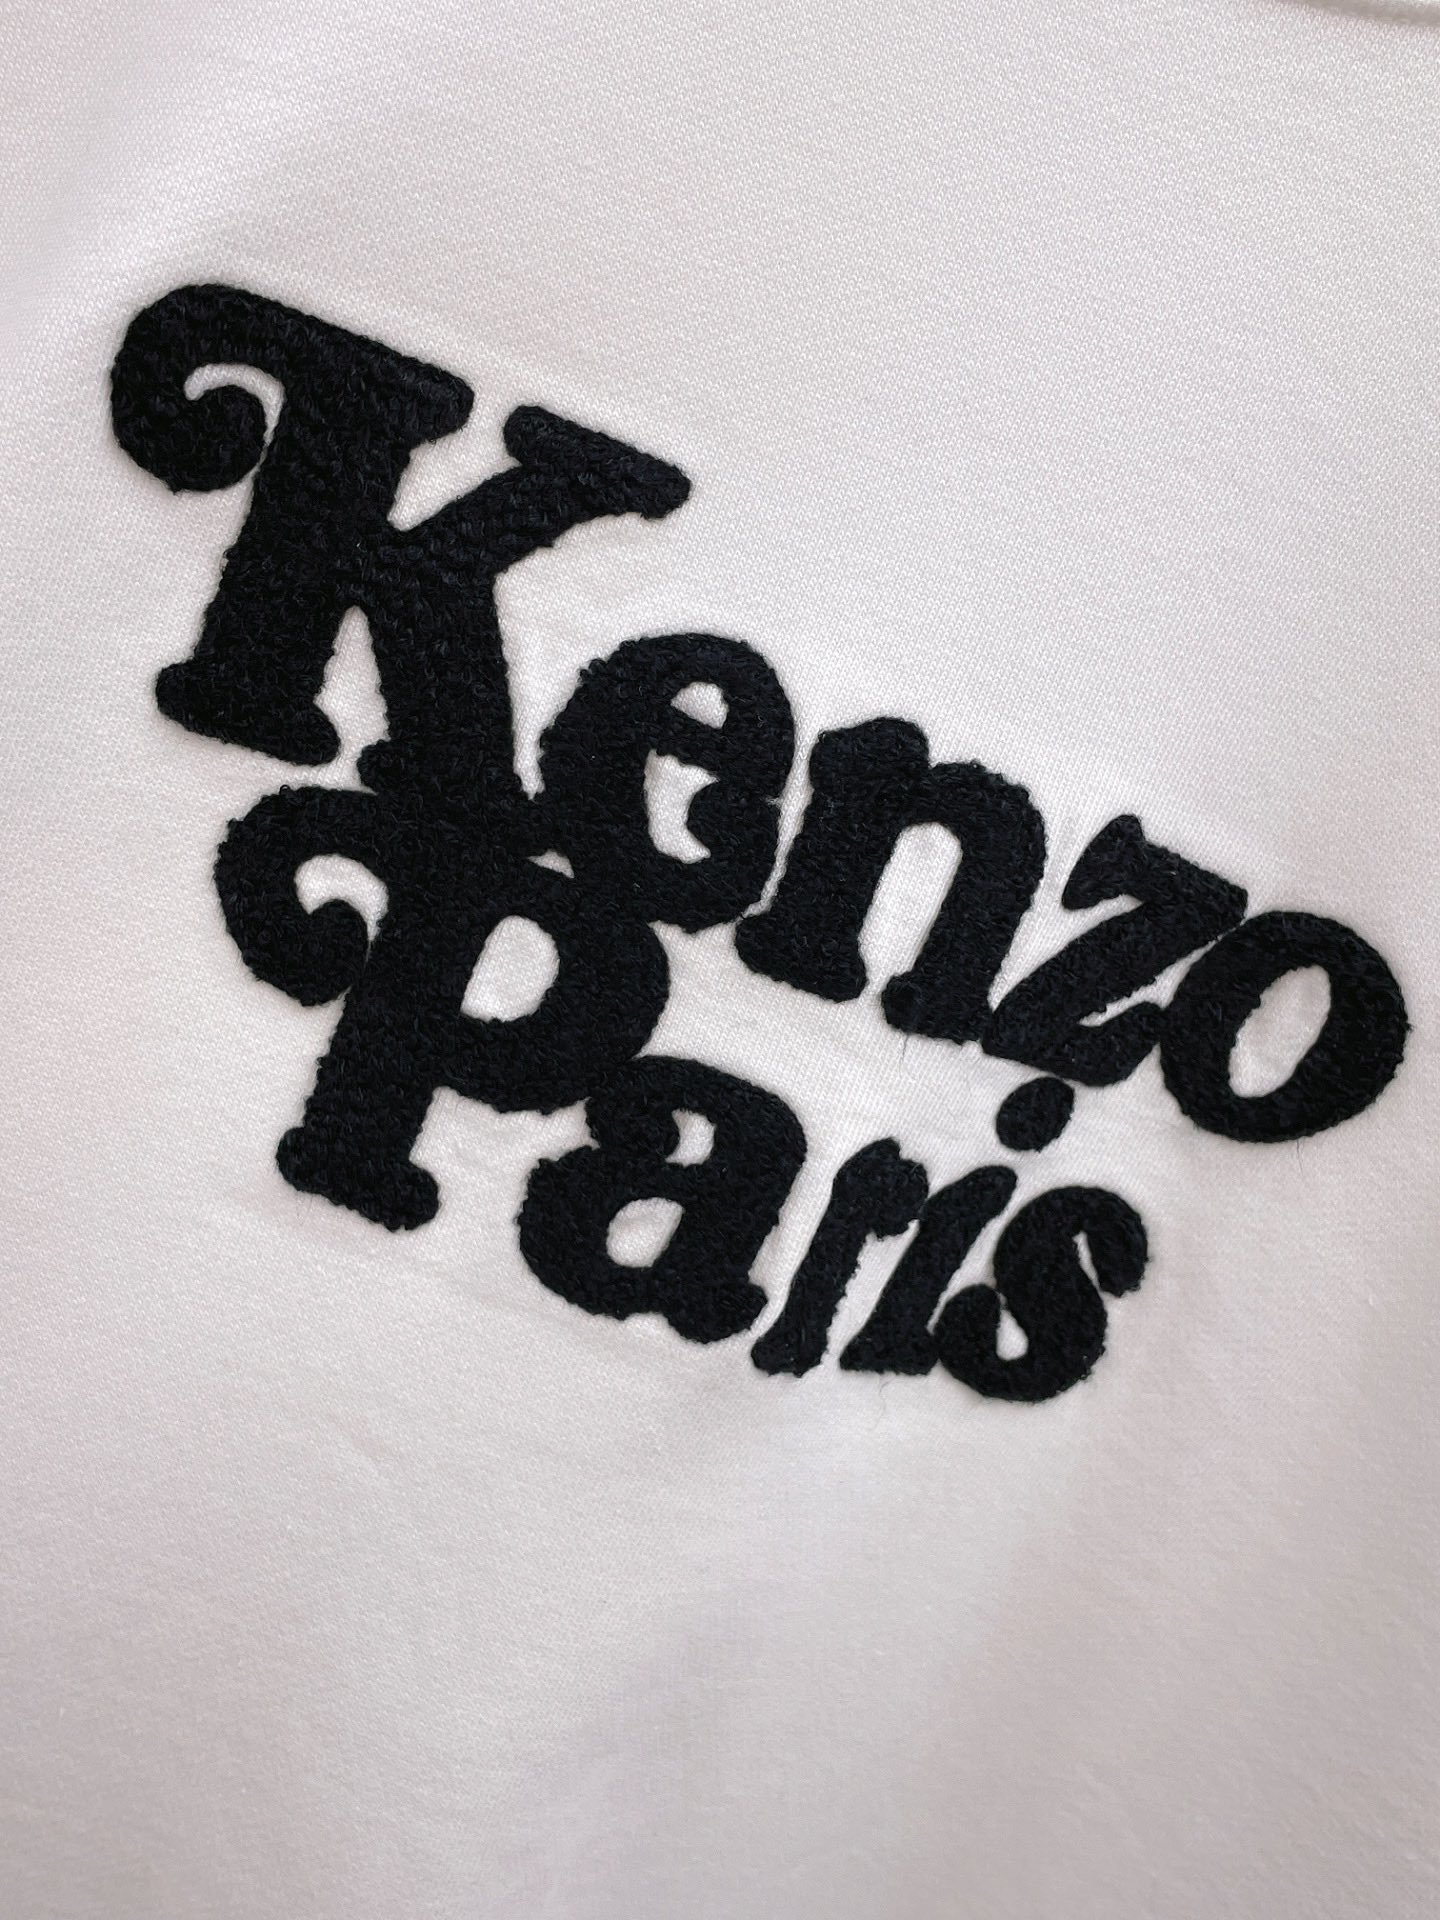 Pk家23SS最新最顶级版本胸前立体字母kenzo大毛巾图案精美工艺圆领卫衣最顶级的品质专柜原单套头衫顶